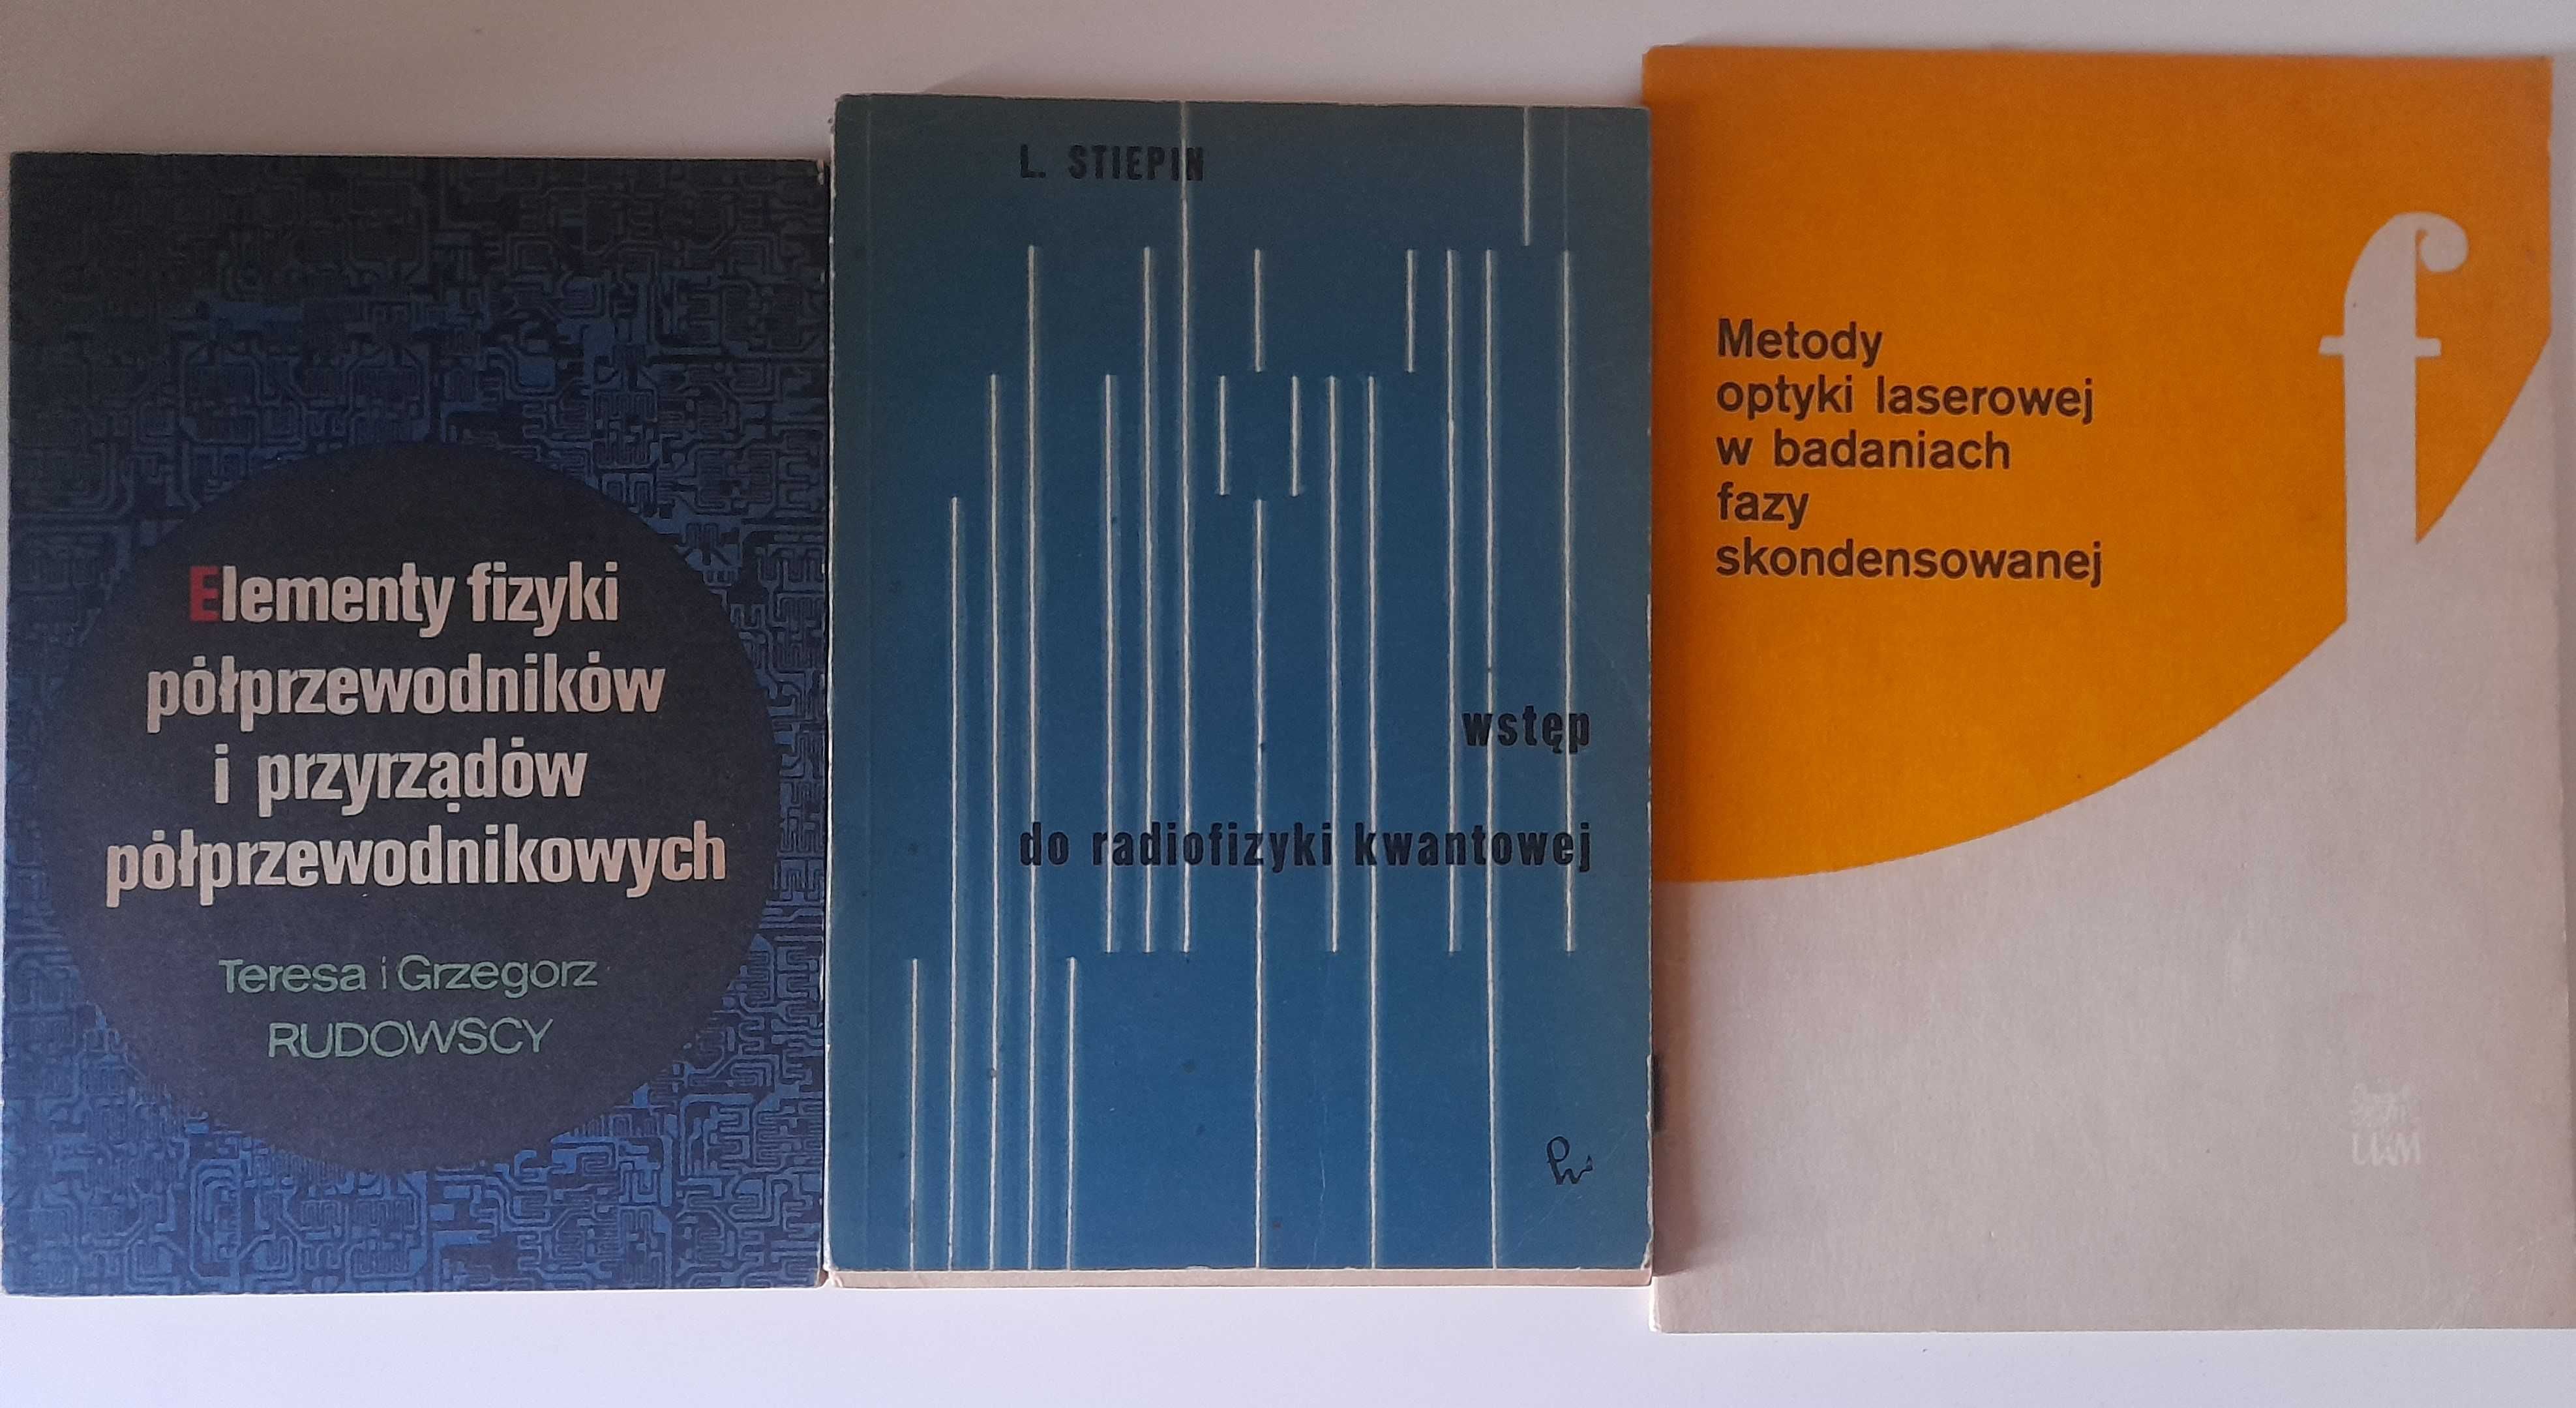 Wstęp do fizyki współczesnej podstawy teoretyczne tom 1 + 3 książki